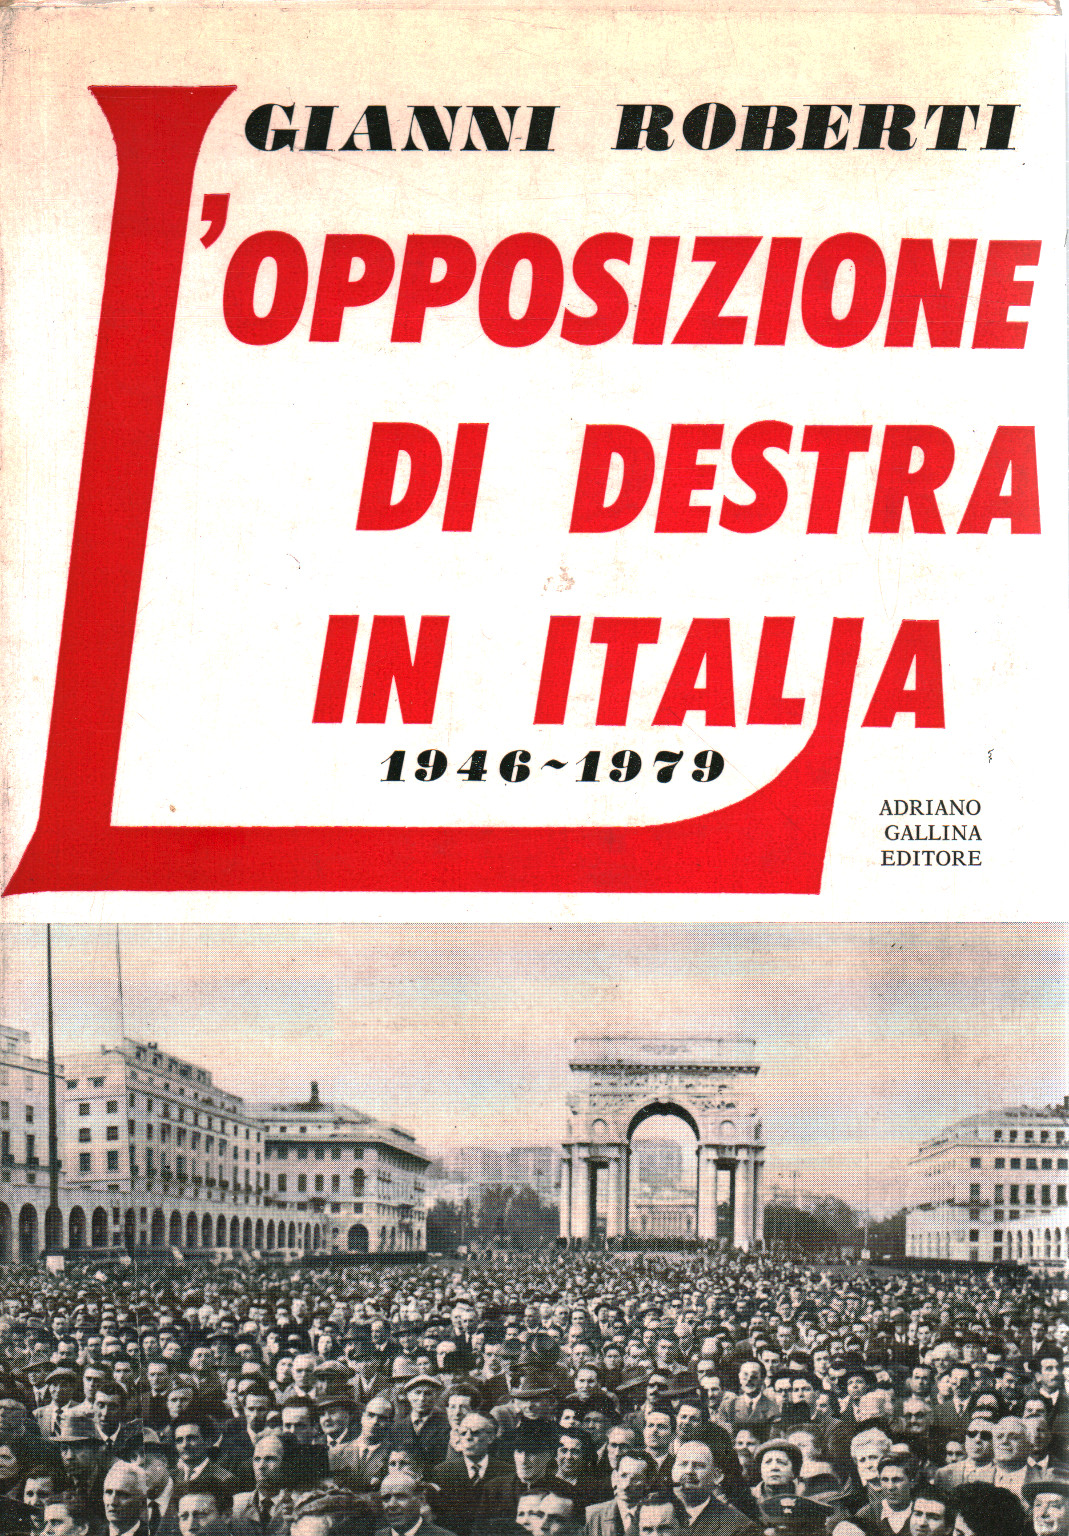 Die rechte Opposition in Italien 1946-1979, s.a.